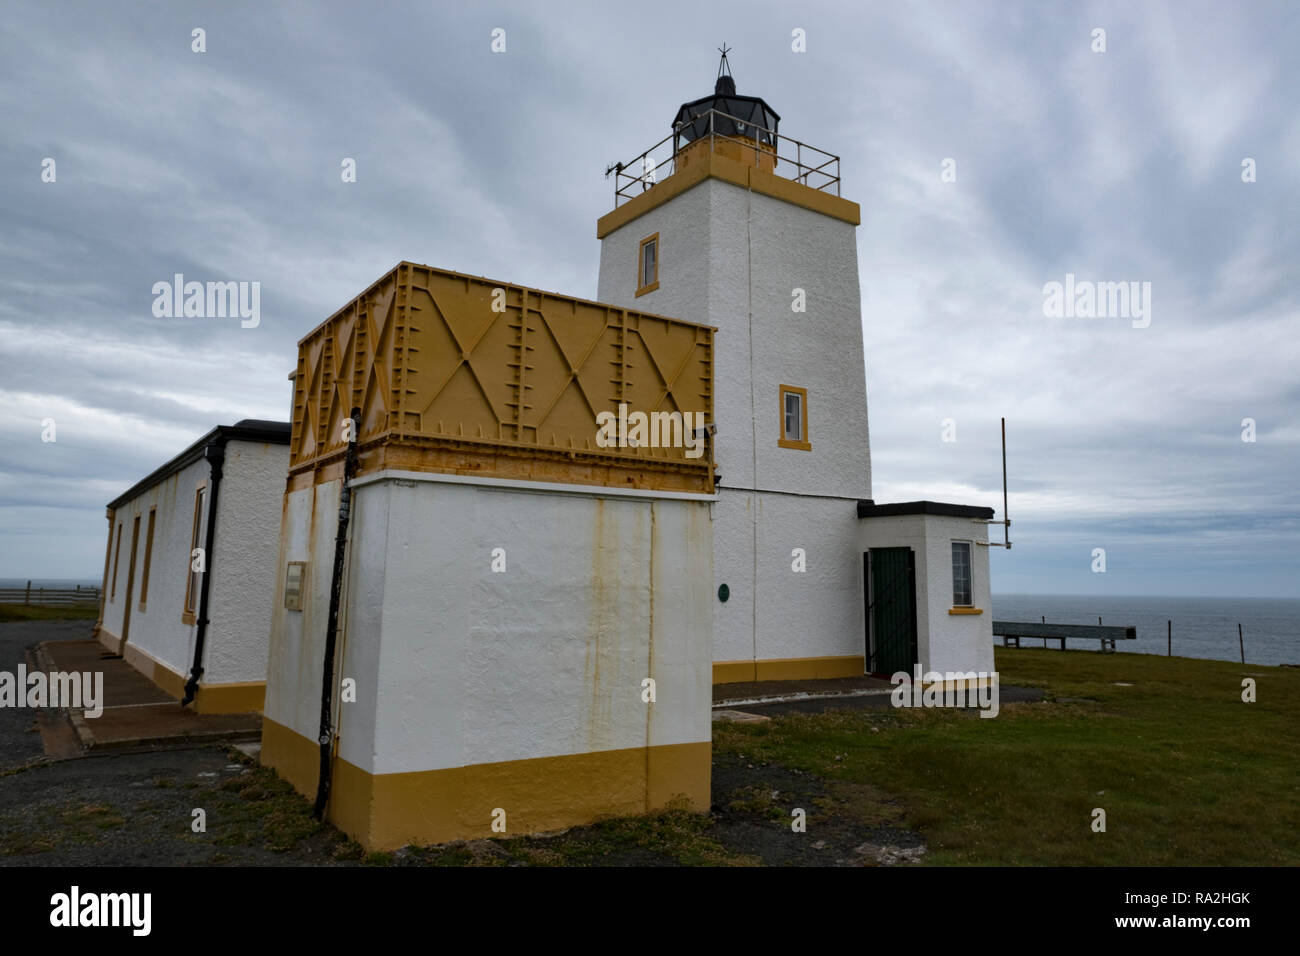 Stevenson le phare sur la côte nord des îles Shetland, d'Écosse et donnant sur l'Océan Atlantique Banque D'Images